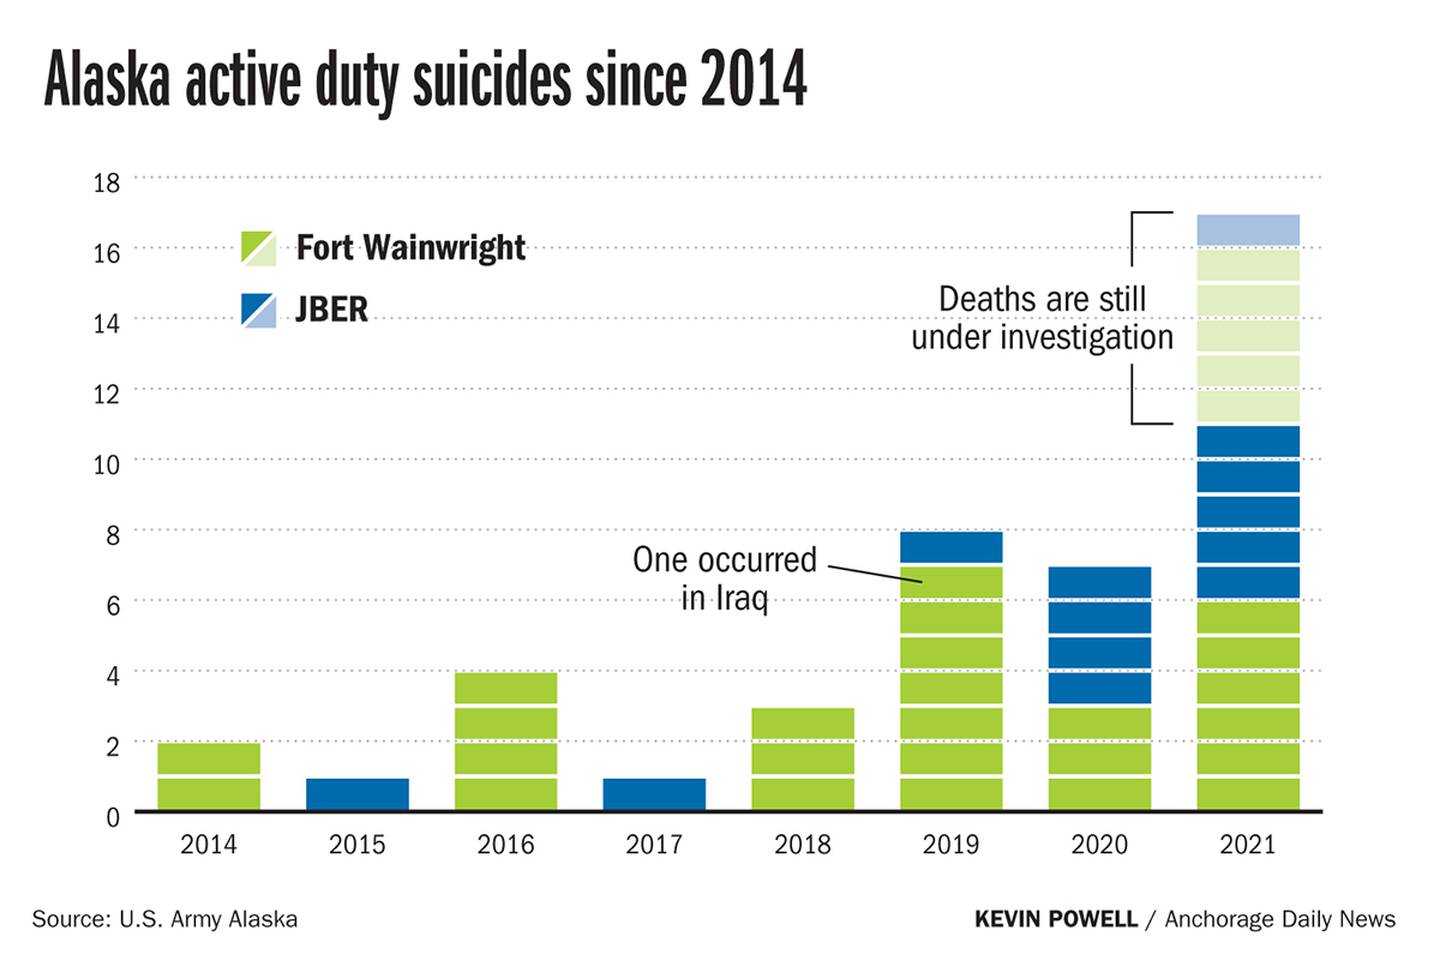 Alaska active duty suicides since 2014